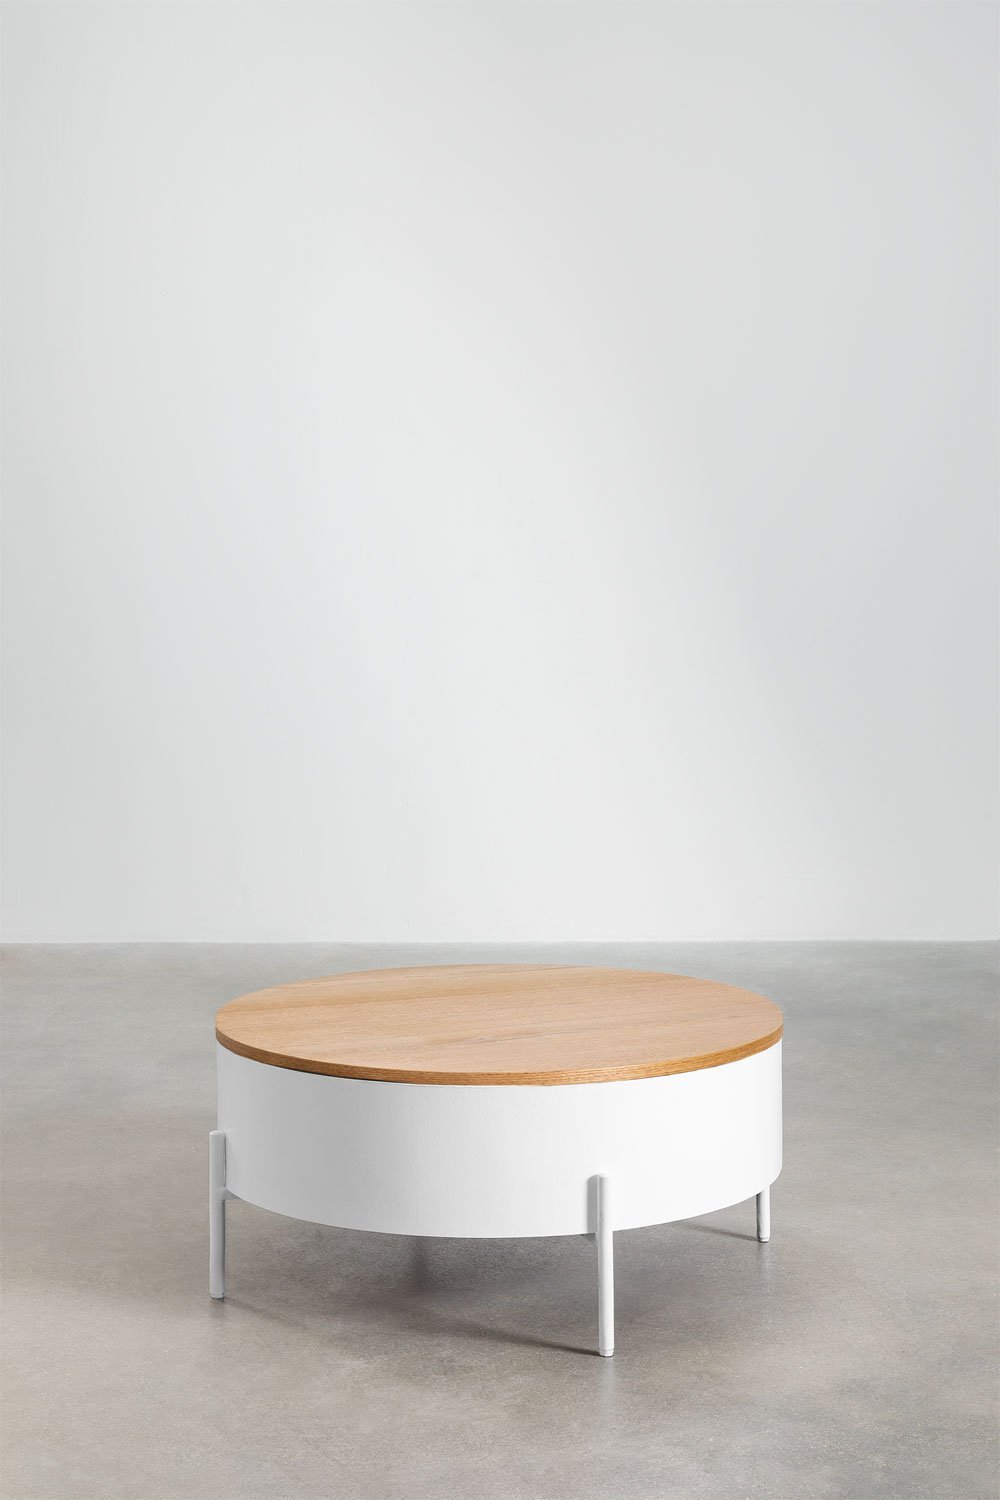 Tavolino Rotondo Elevabile in Legno e Acciaio (Ø80 cm) Tainara, immagine della galleria 1